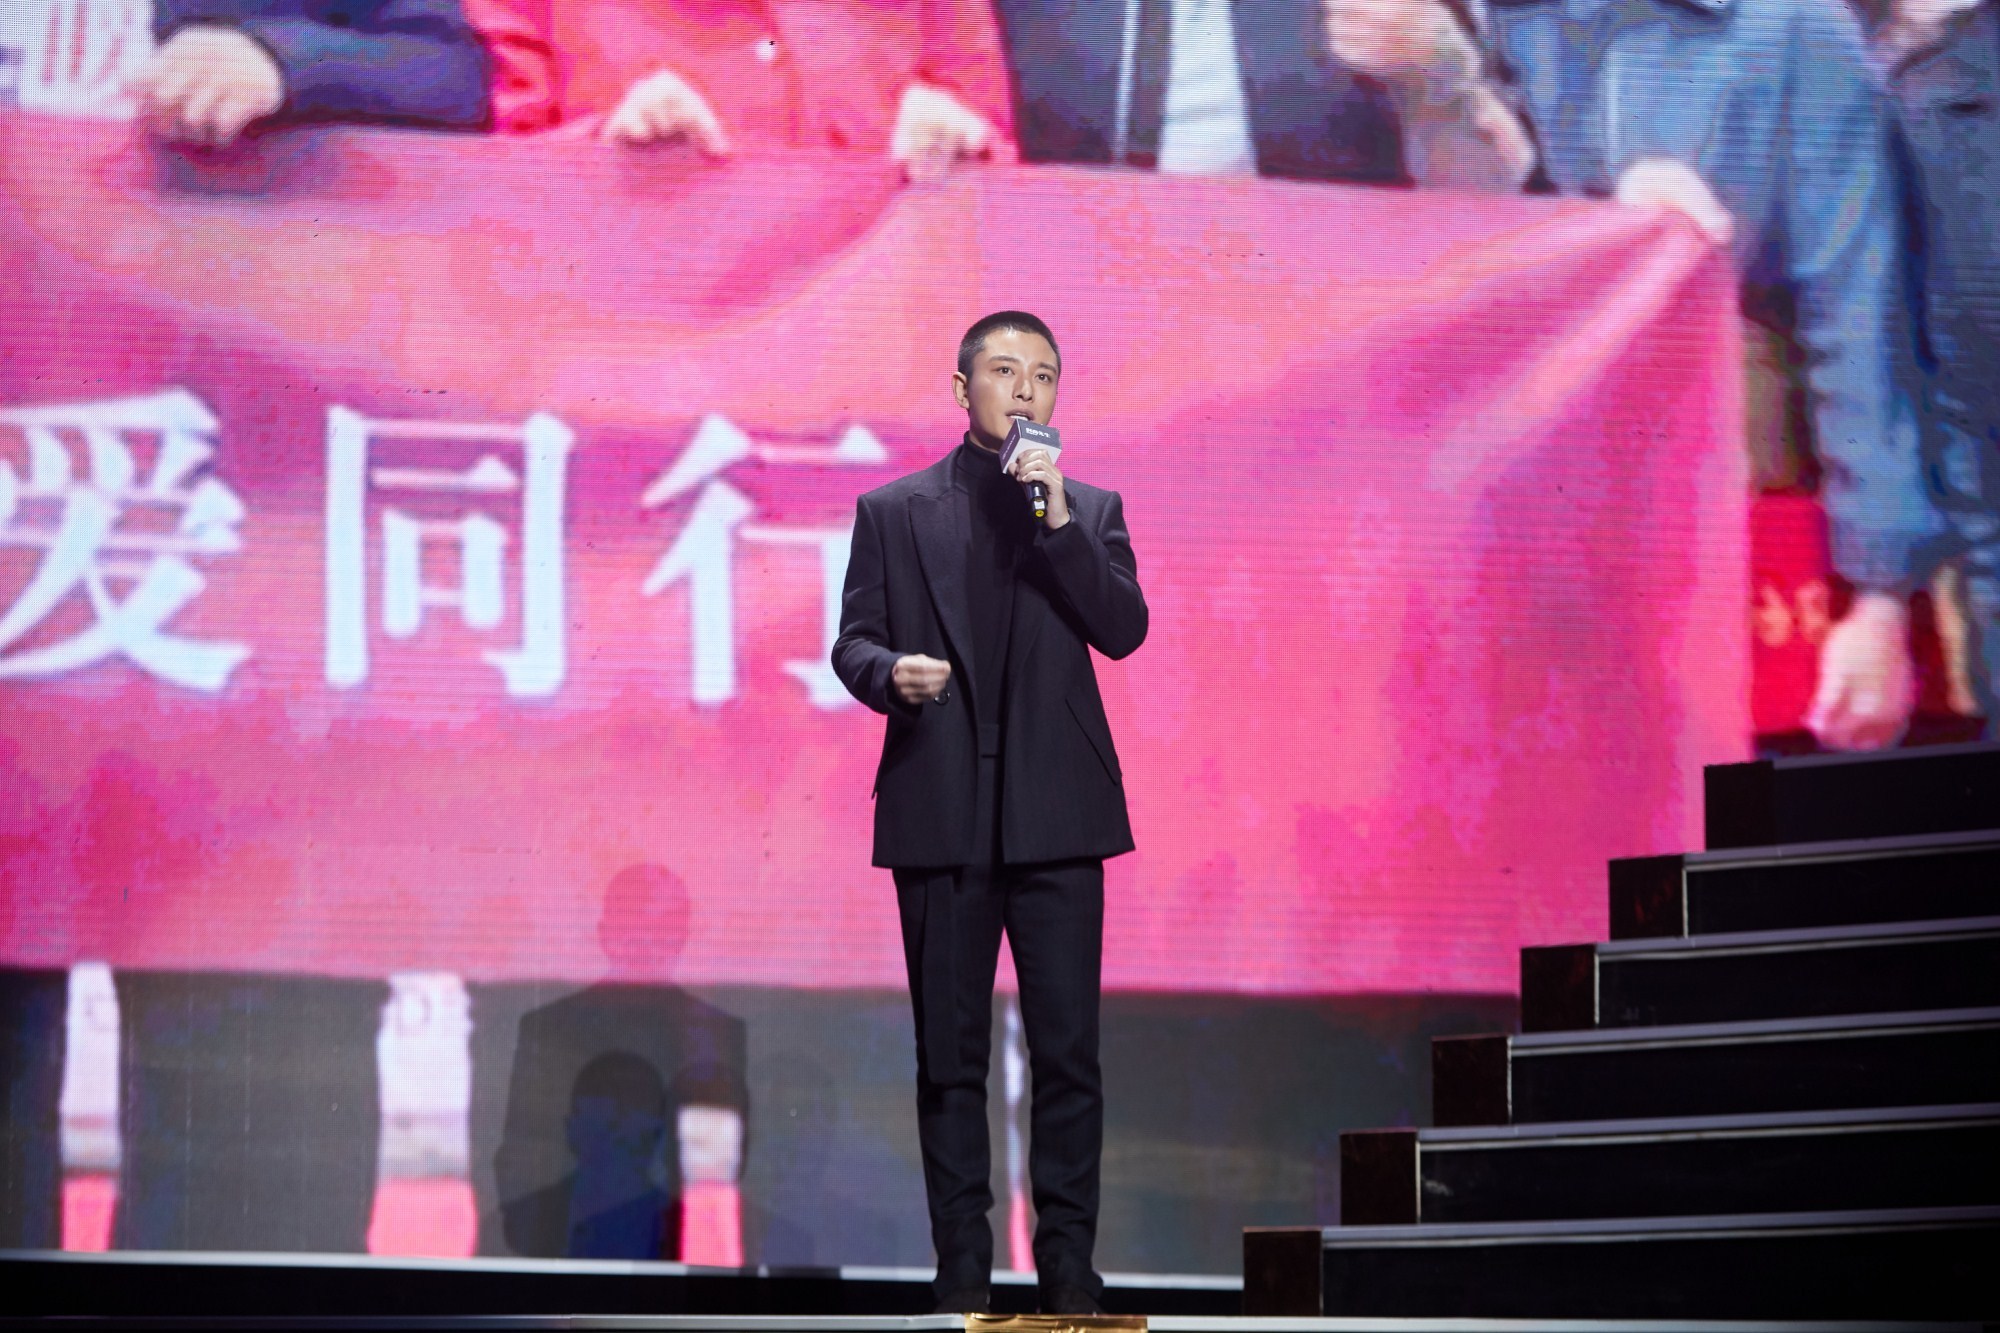 贾乃亮出席第十五届年度先生盛典 风度翩翩获年度公益大使称号